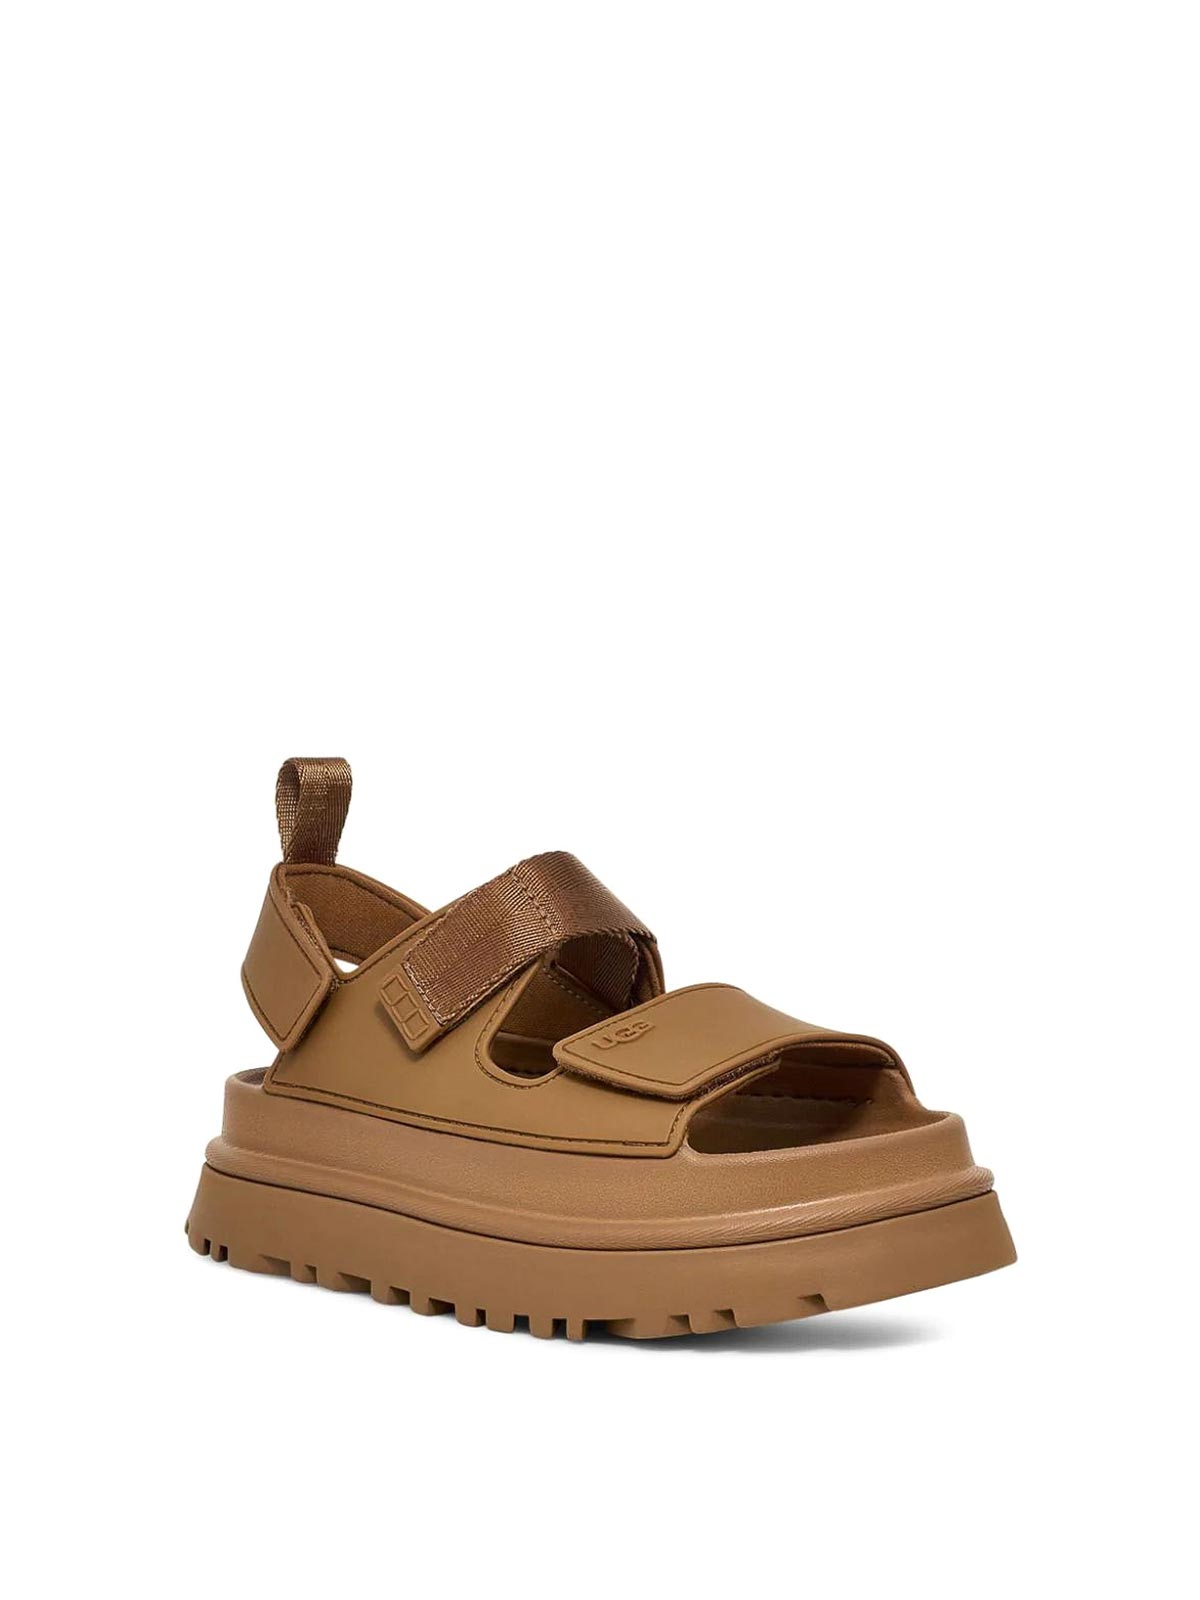 Shop Ugg Goldenglow Sandals In Brown